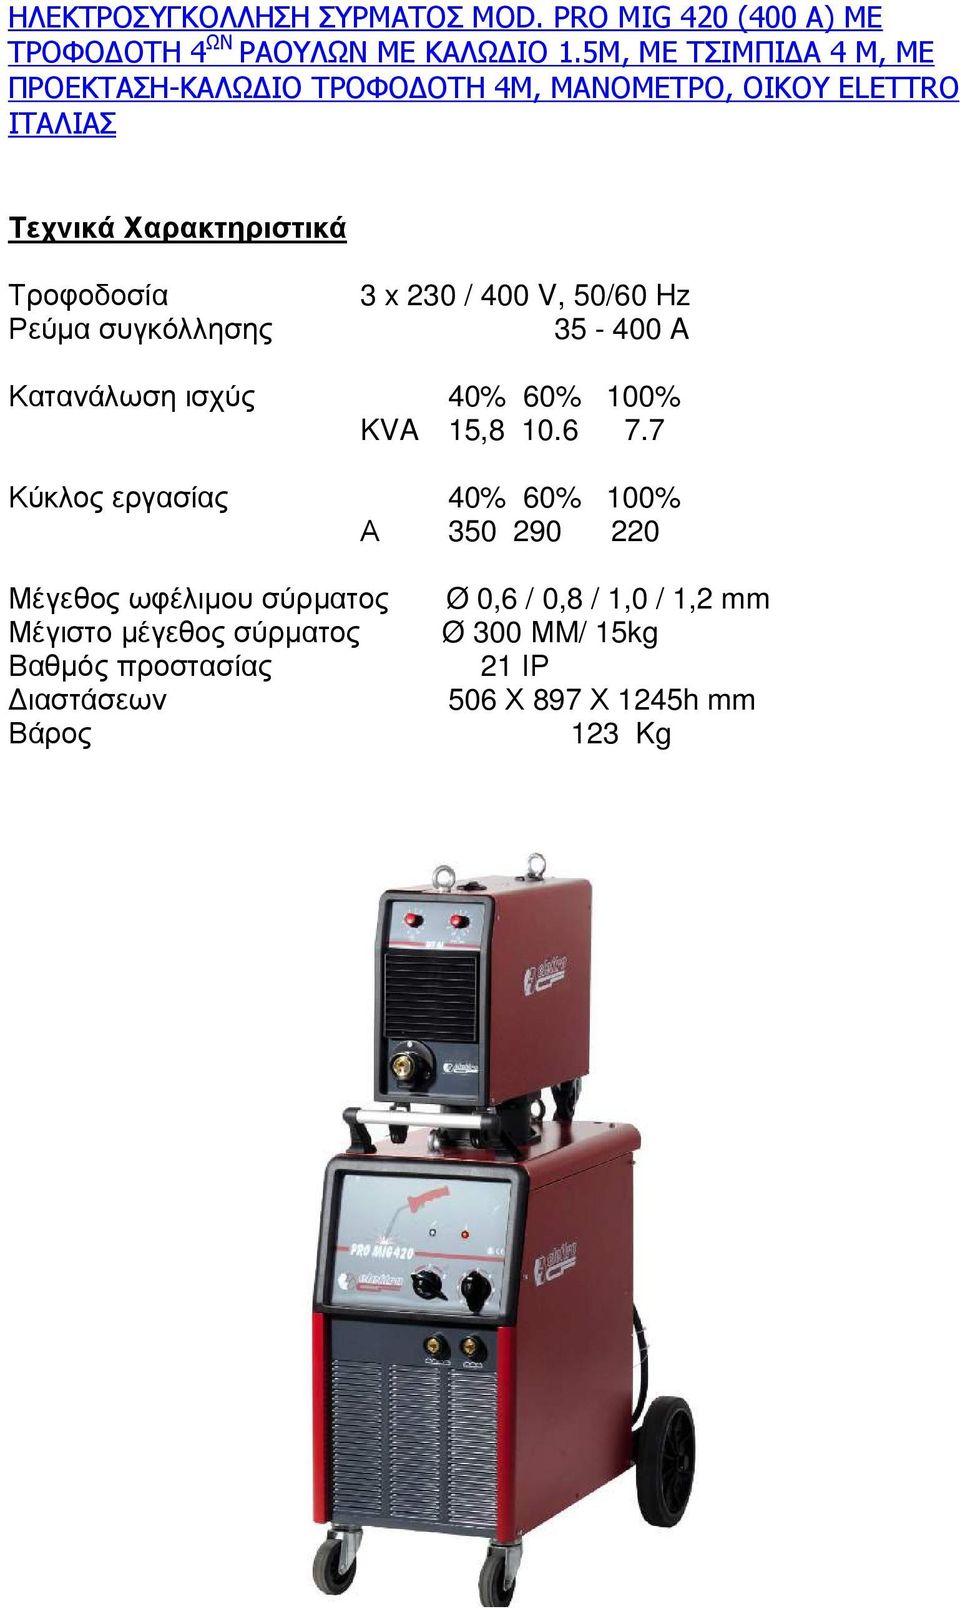 συγκόλλησης 3 x 230 / 400 V, 50/60 Hz 35-400 A Κατανάλωση ισχύς 40% 60% 100% KVA 15,8 10.6 7.